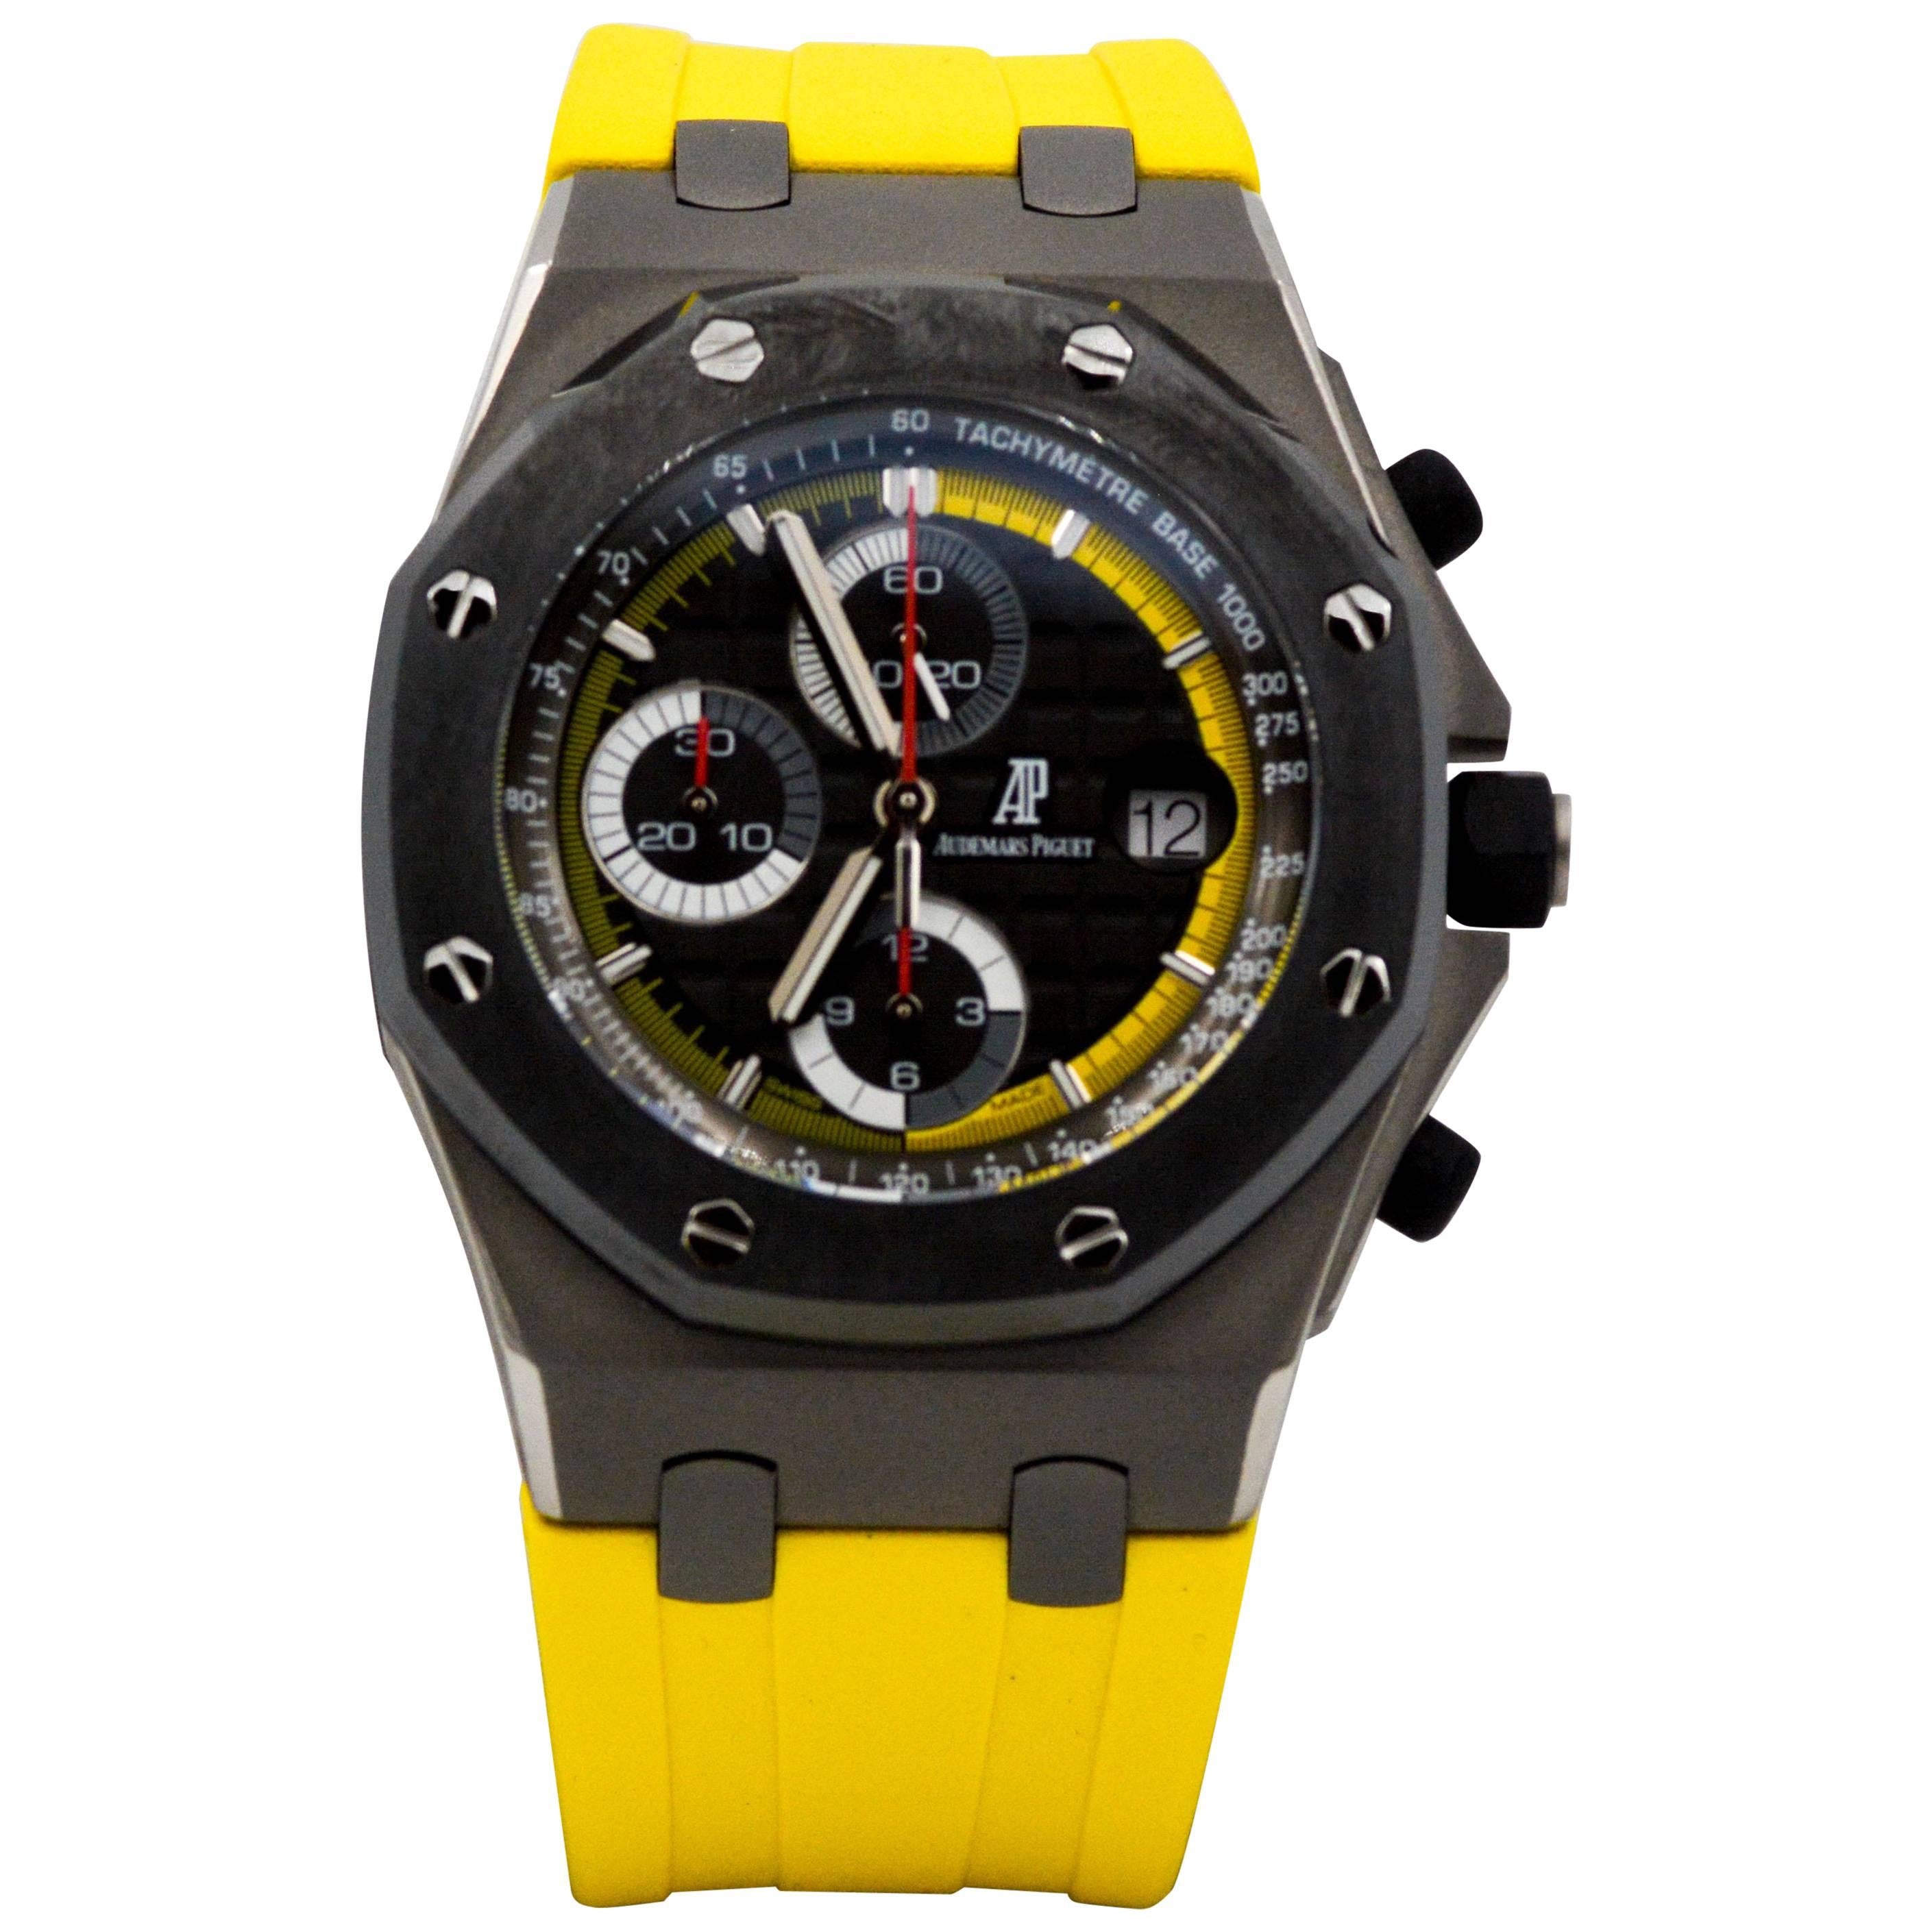 Audemar Piguet titanium Royal Oak Off Shore Limited Edition Automatic Wristwatch